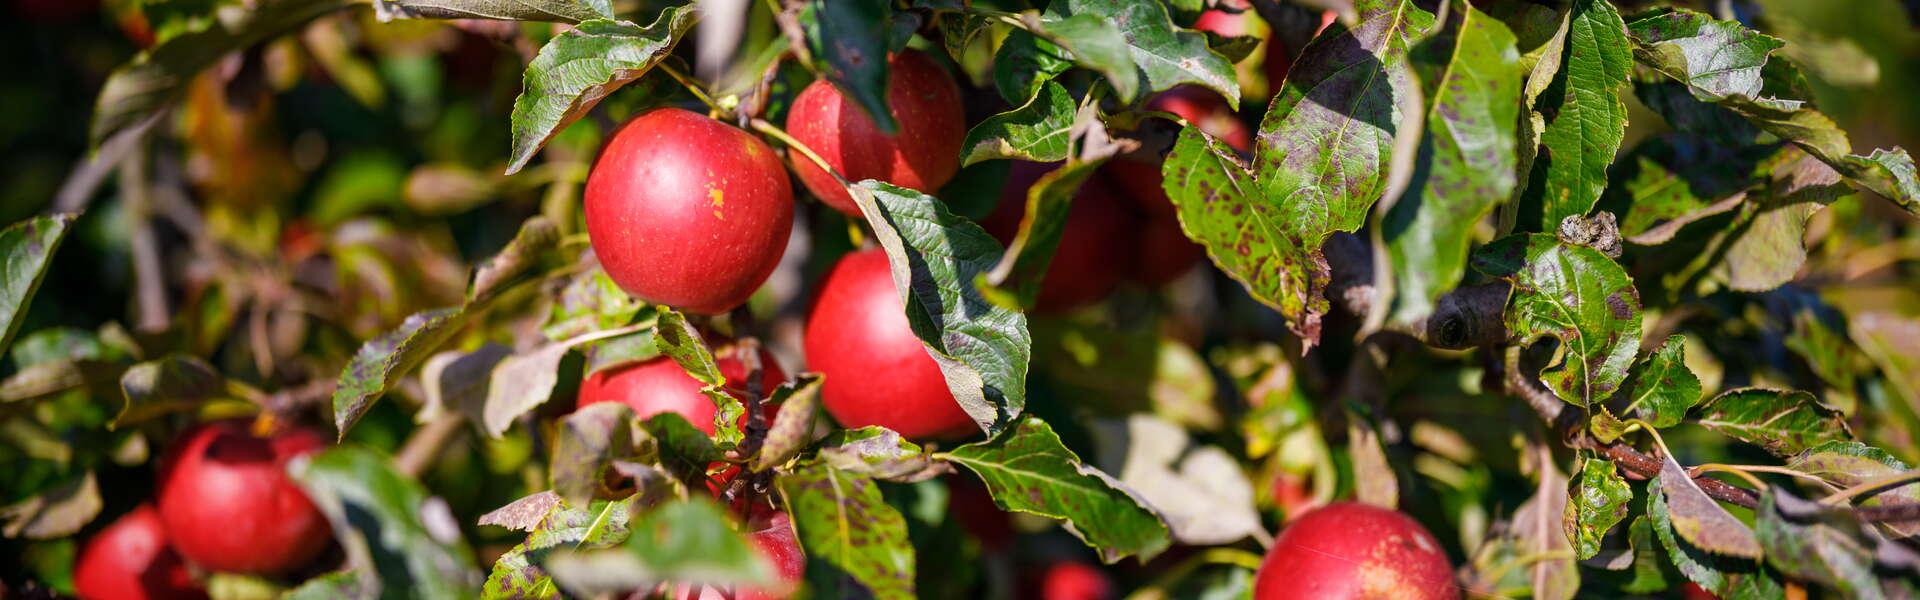 Rote Äpfel aus Łącko, die an einem Baum hängen